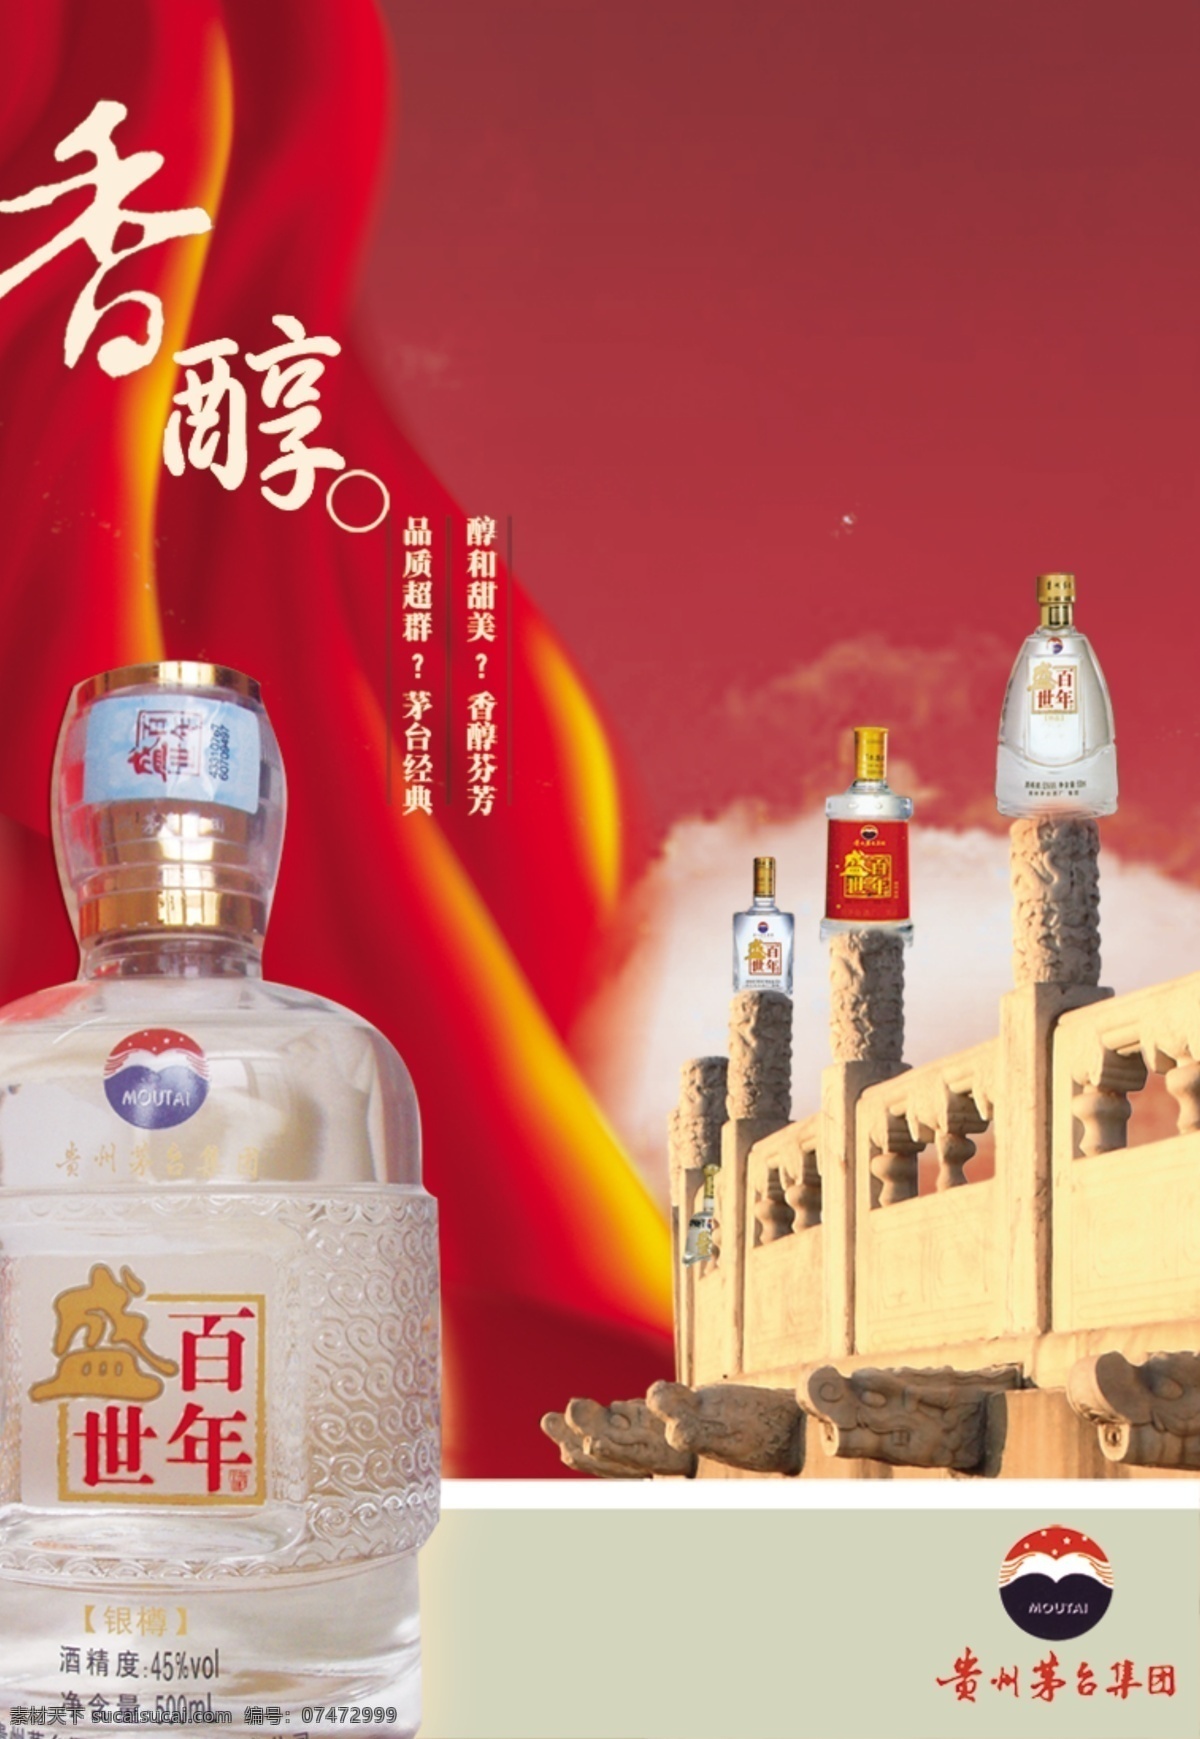 贵州茅台集团 盛世百年 盛世百年酒 古建筑 红色